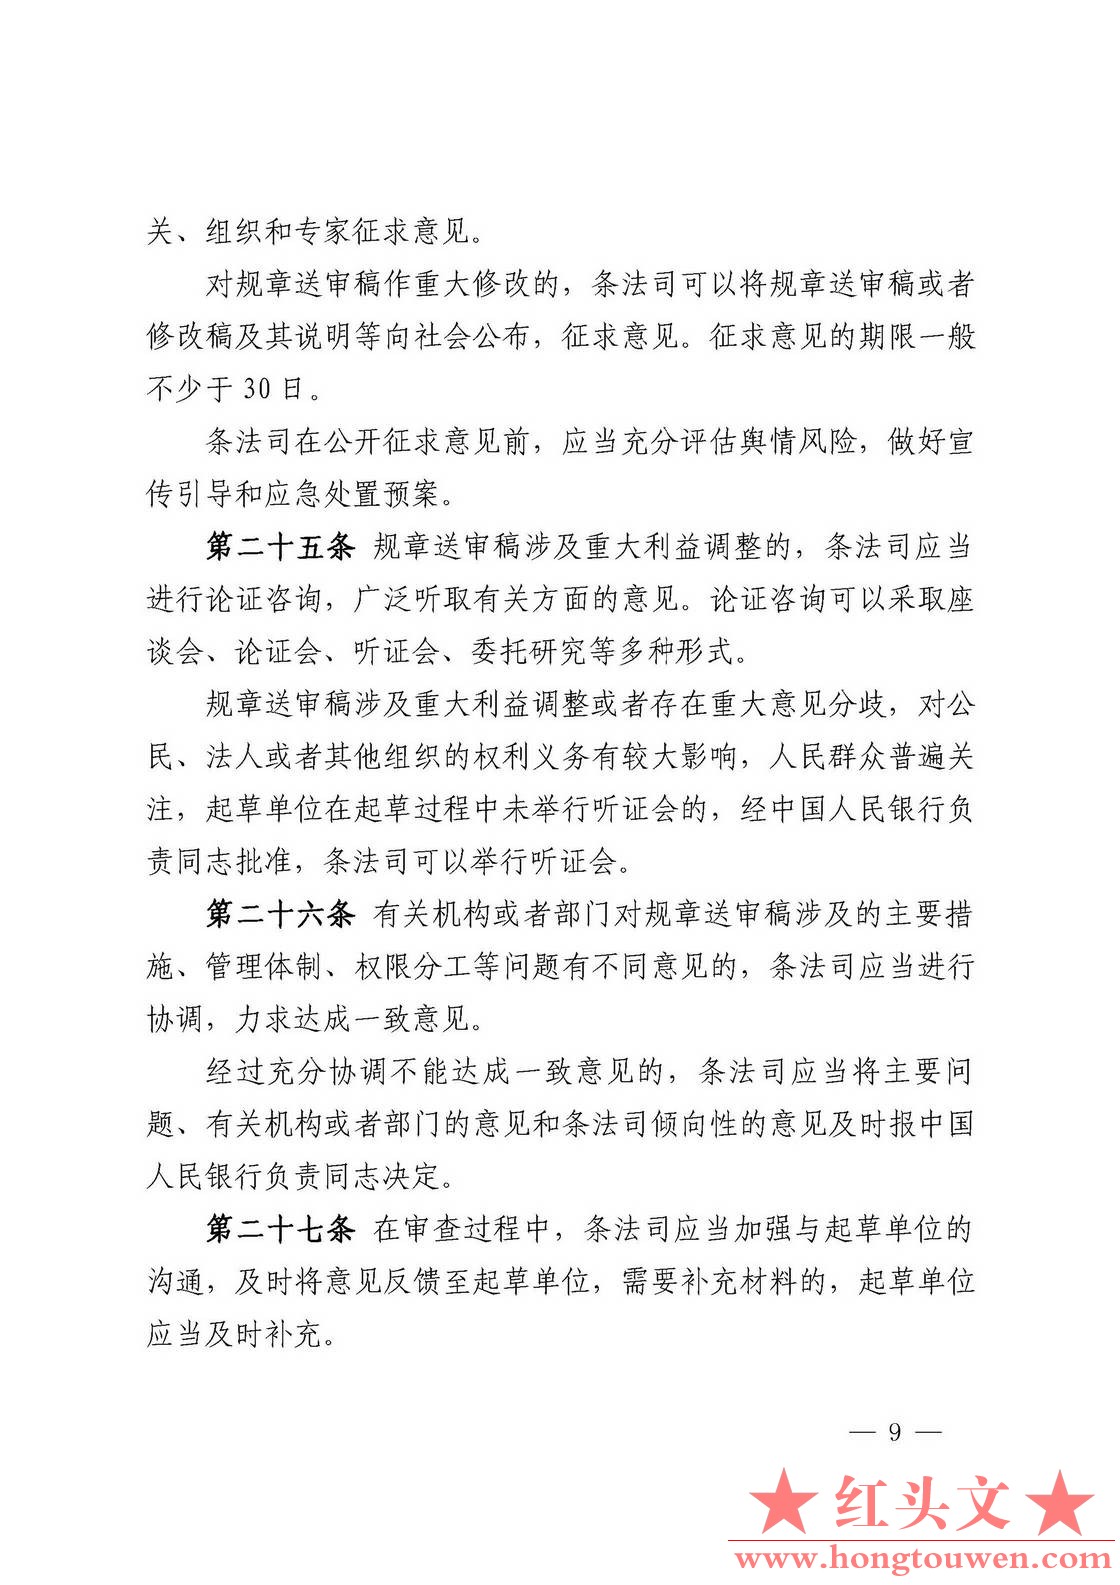 中国人民银行令[2018]3号-中国人民银行规章制定程序与管理规定_页面_09.jpg.jpg